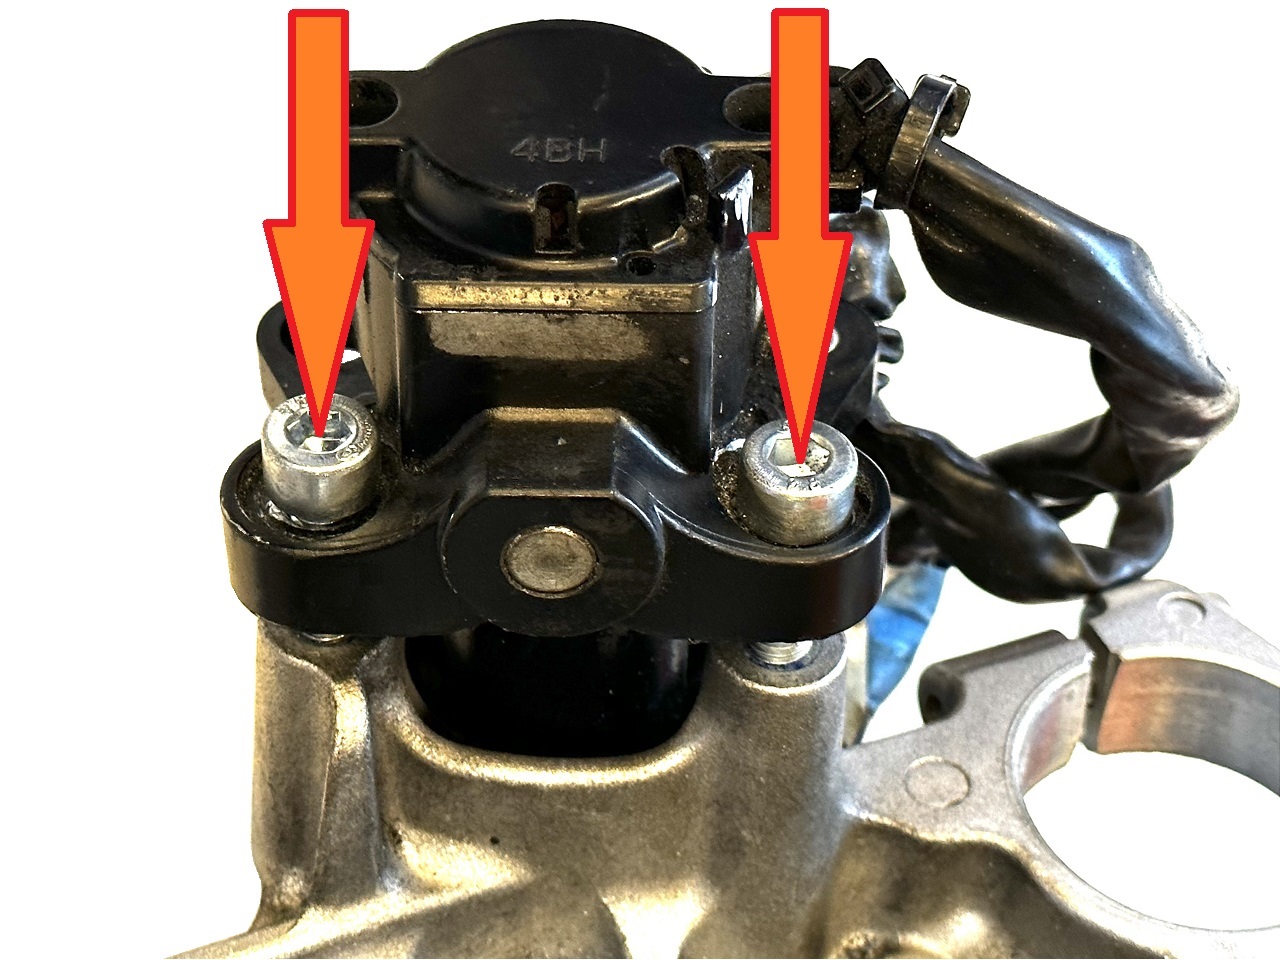 Bulloni di taglio / bulloni a scatto dell'immobilizzatore per moto Yamaha servizio di rimozione + nuovi bulloni - Clicca l'immagine per chiudere